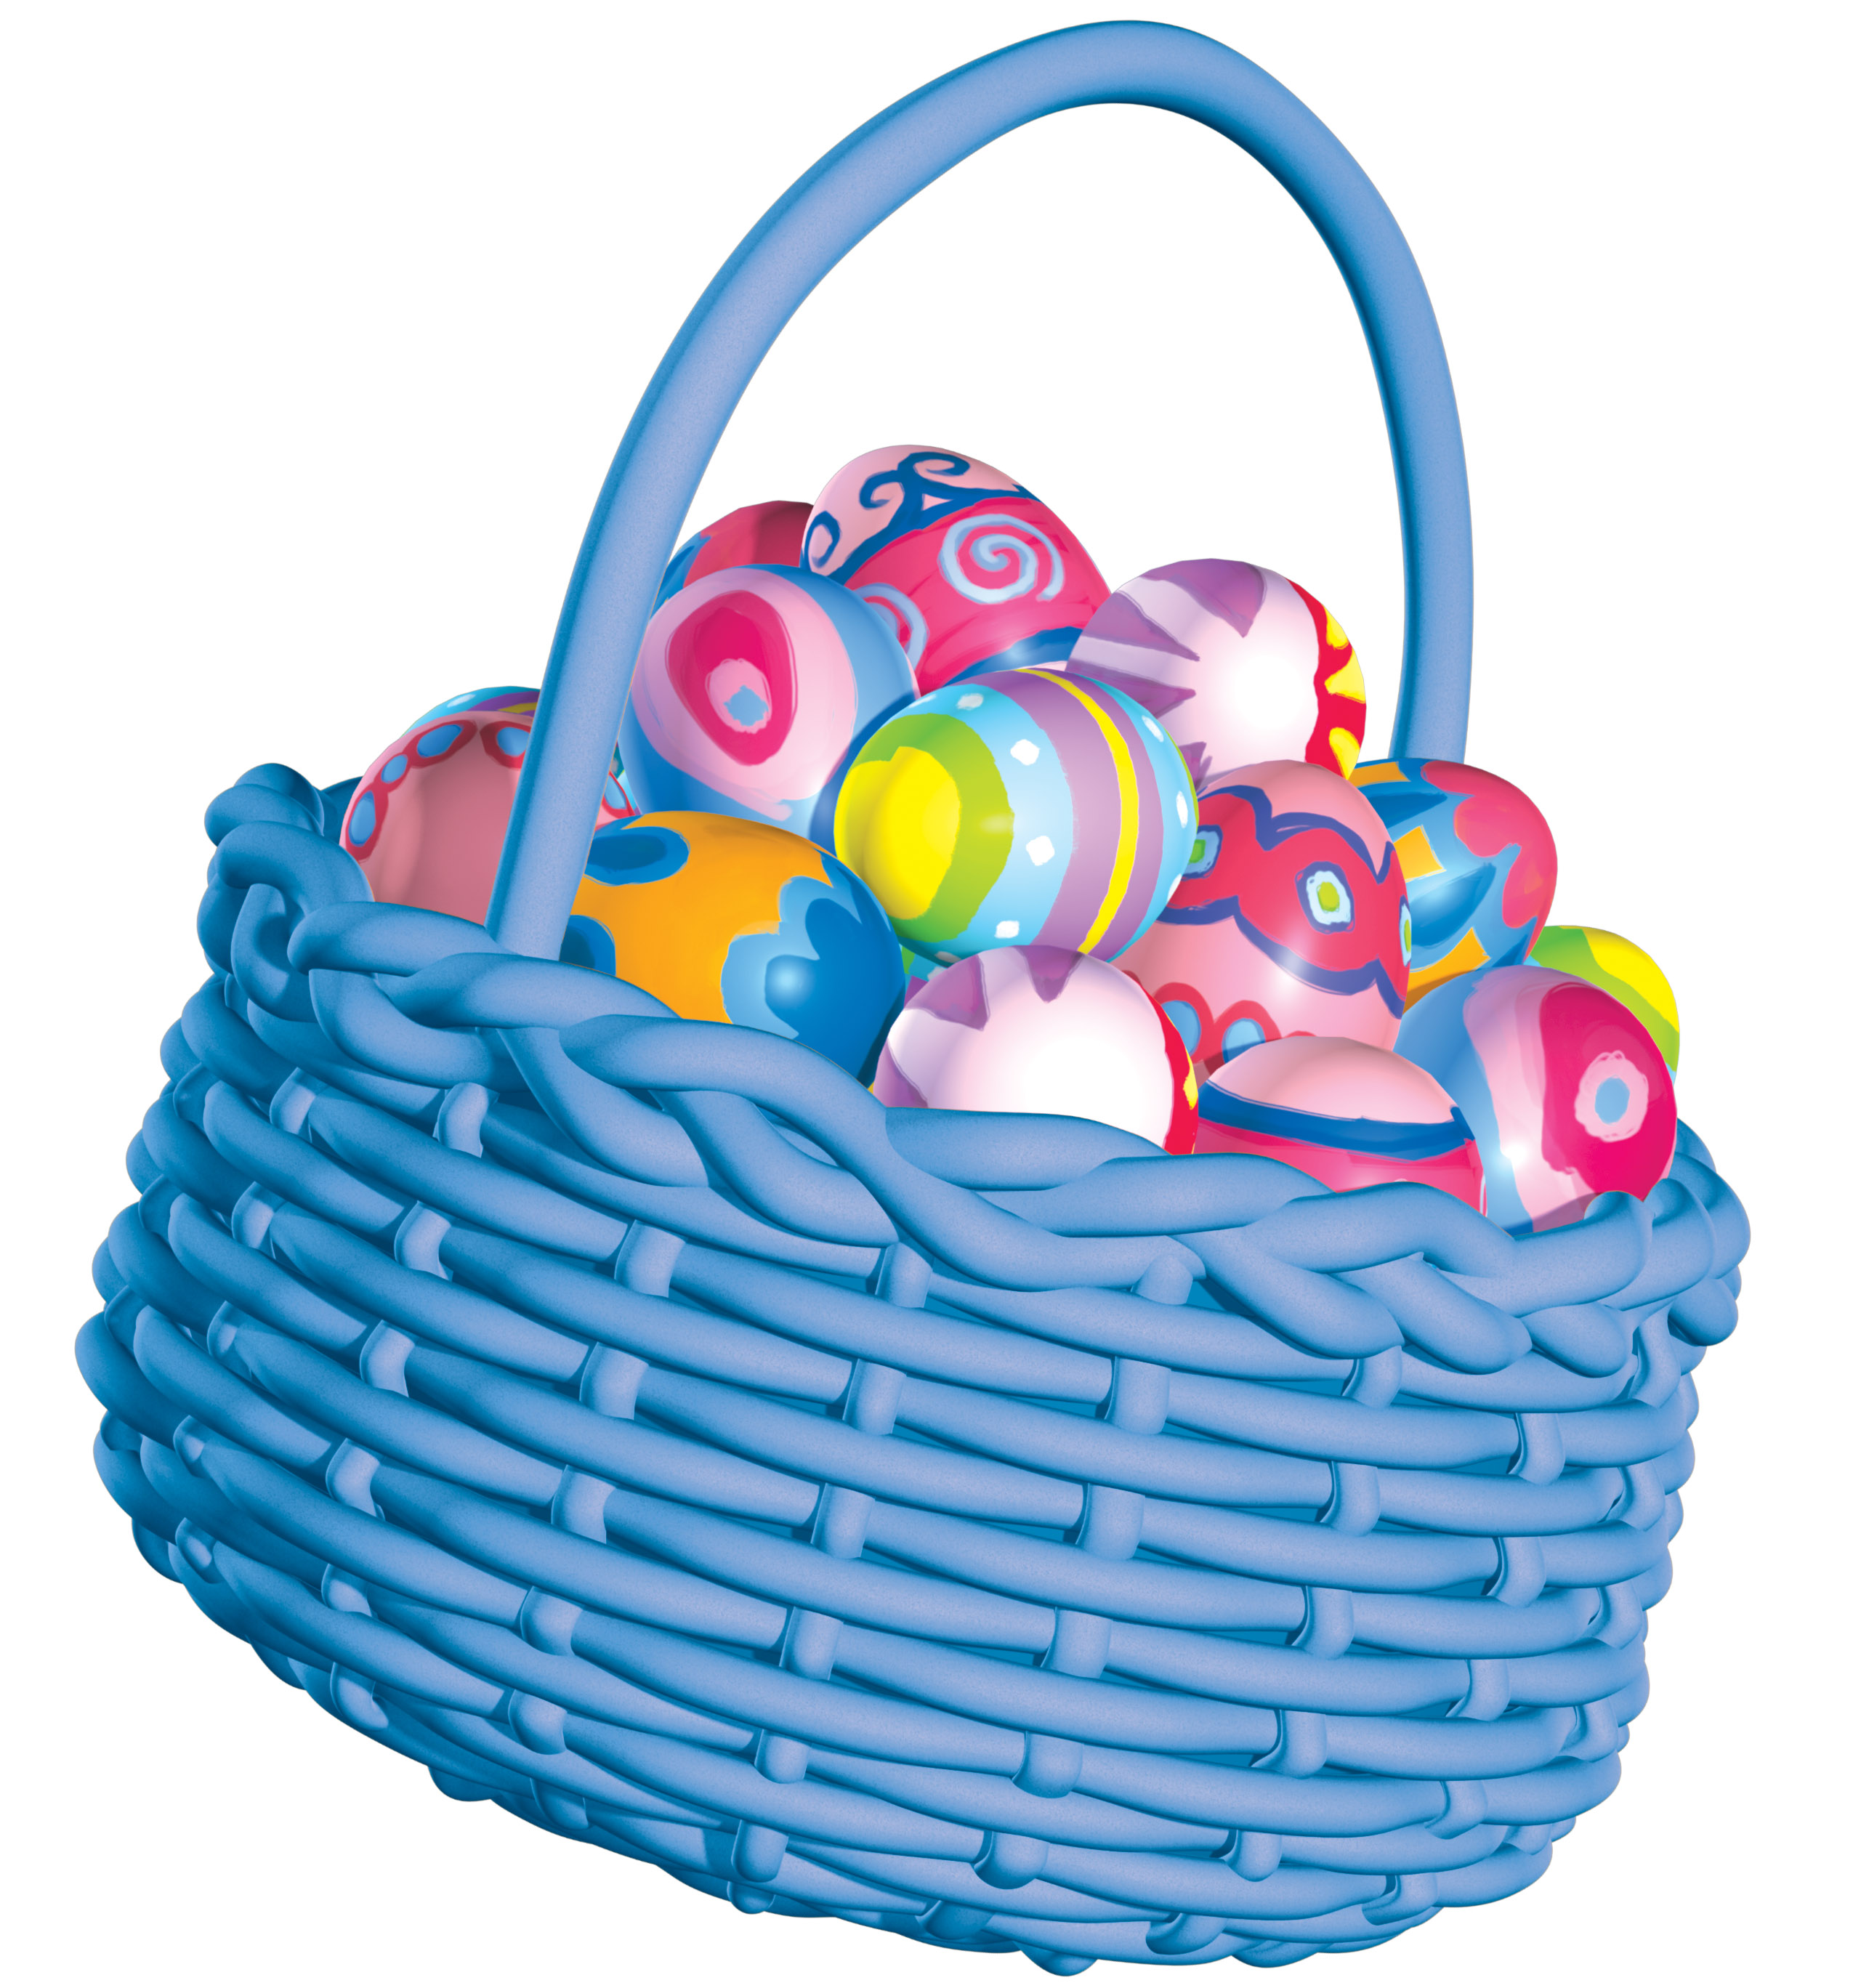 Images of Easter Egg Basket - Jefney